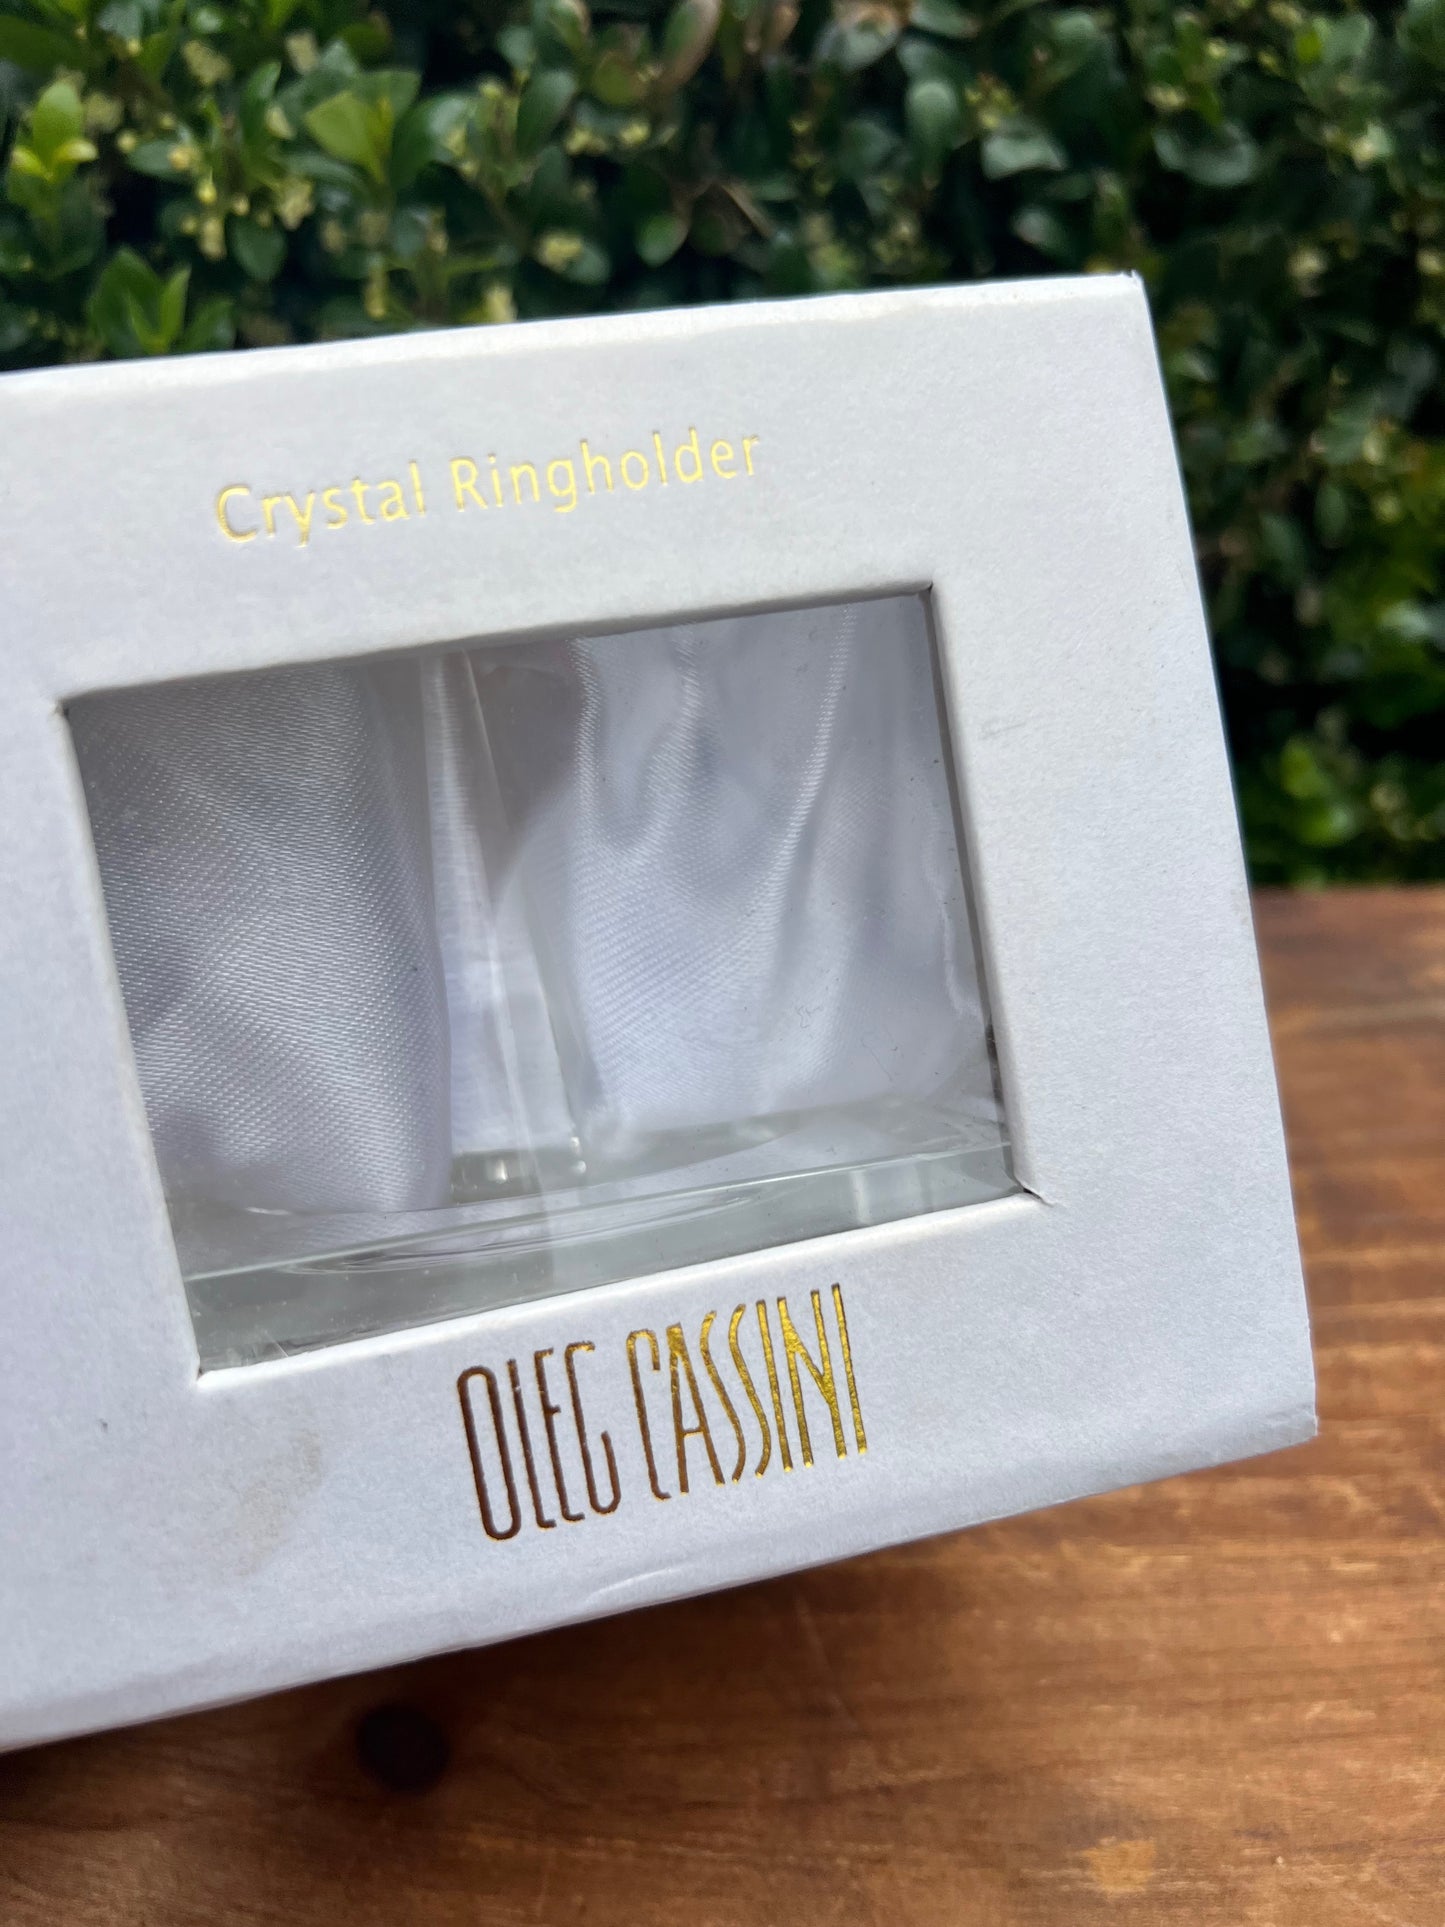 Oleg Cassini Crystal Ringholder Boxed